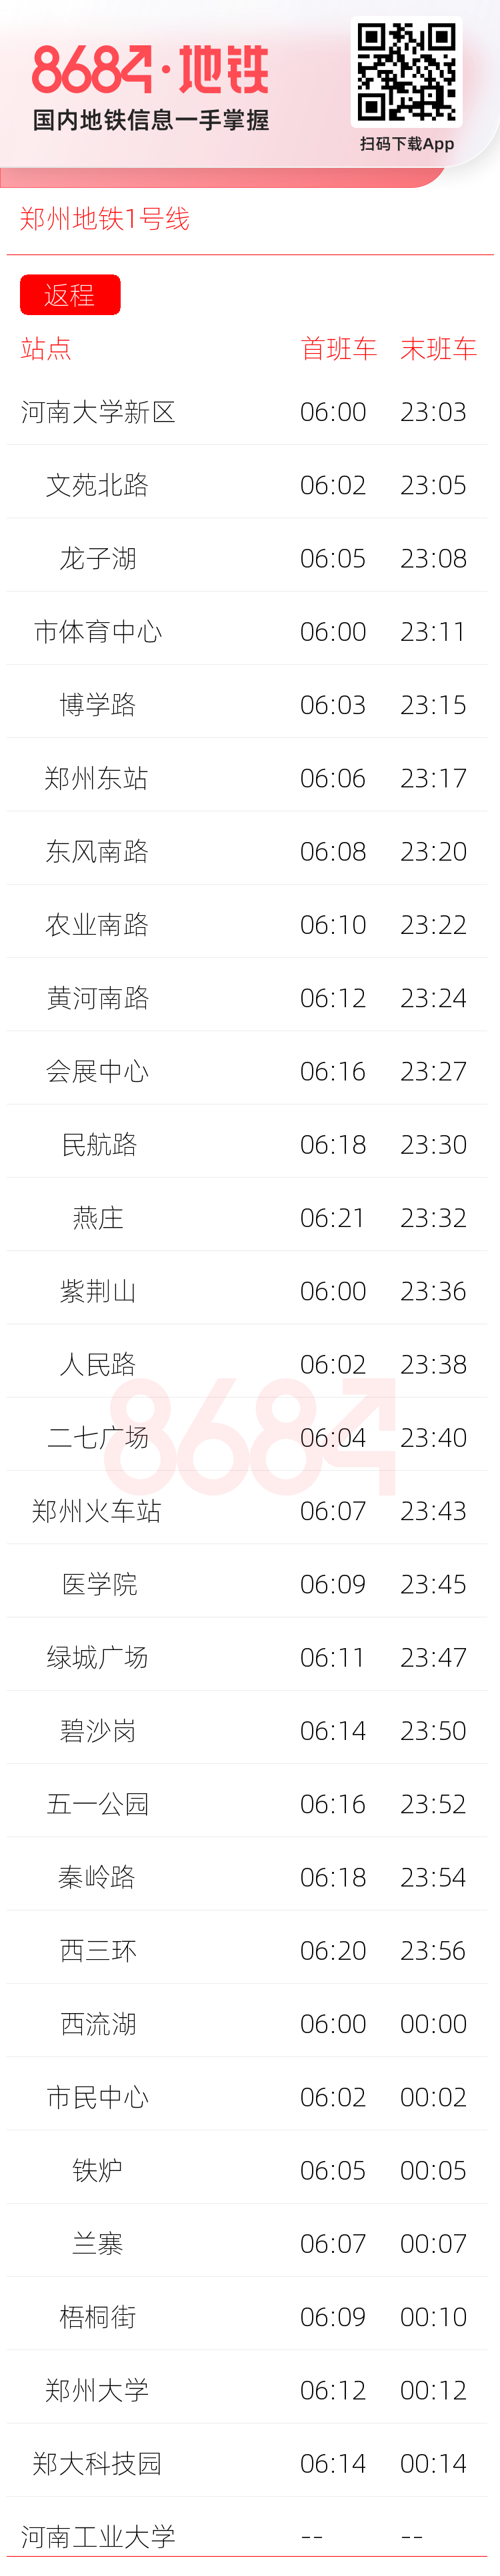 郑州地铁1号线运营时间表